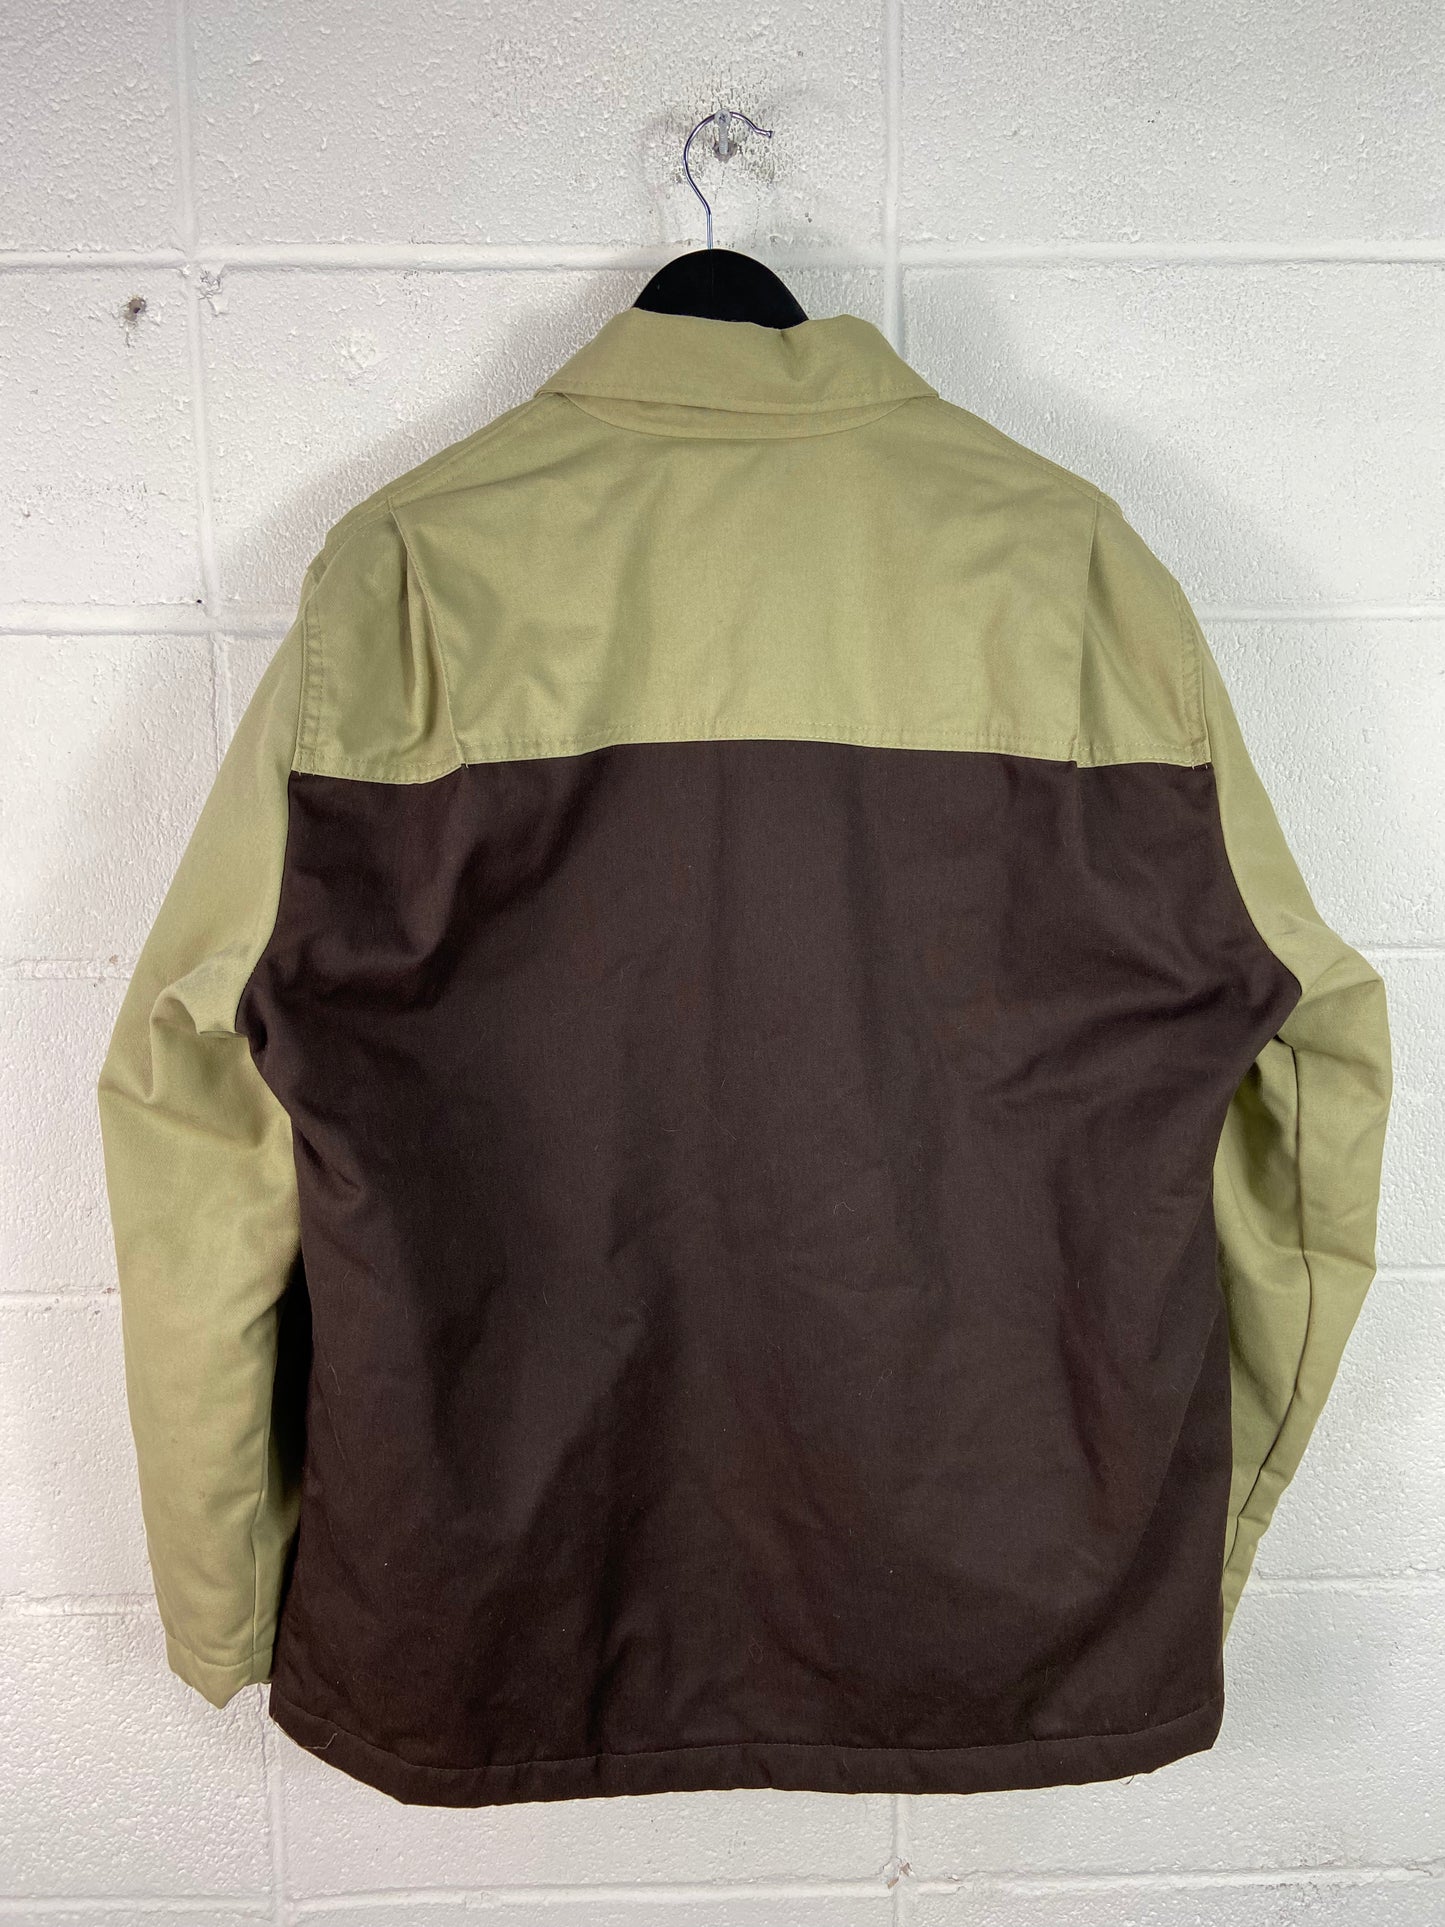 Dickies Tan/Brown Workwear Zip Up Jacket Sz L